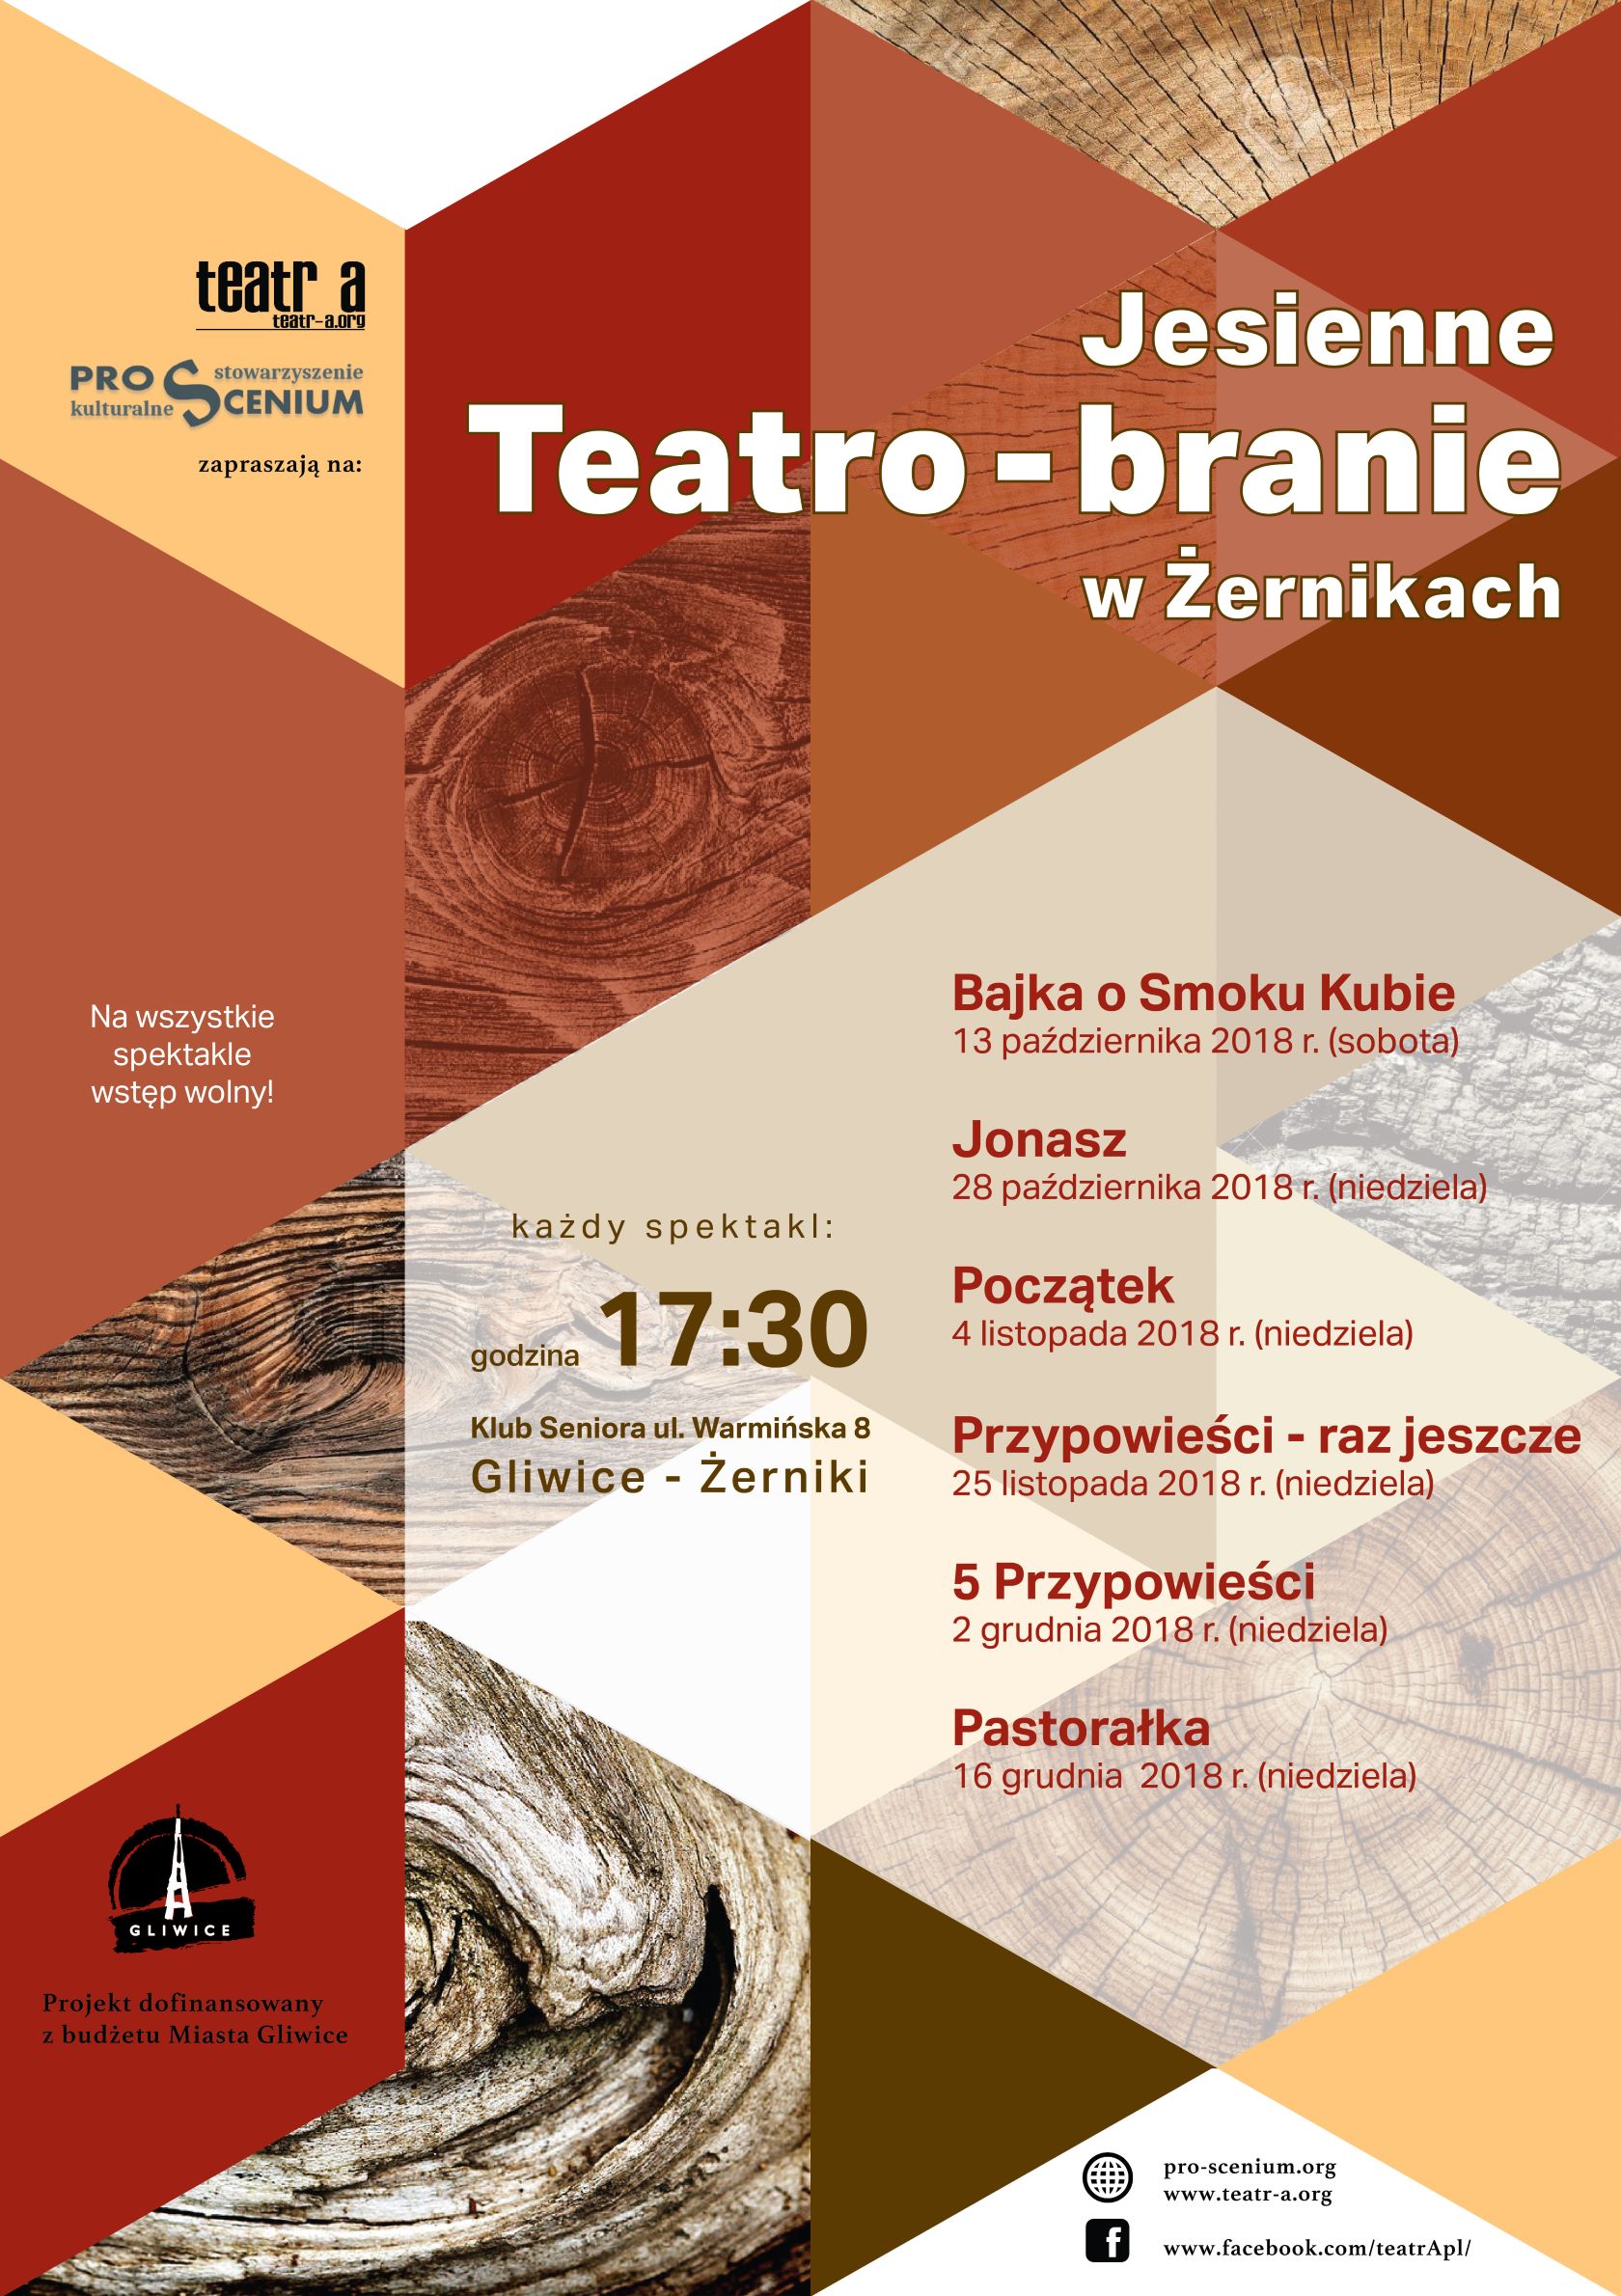 Jesienne Teatro-branie w Żernikach